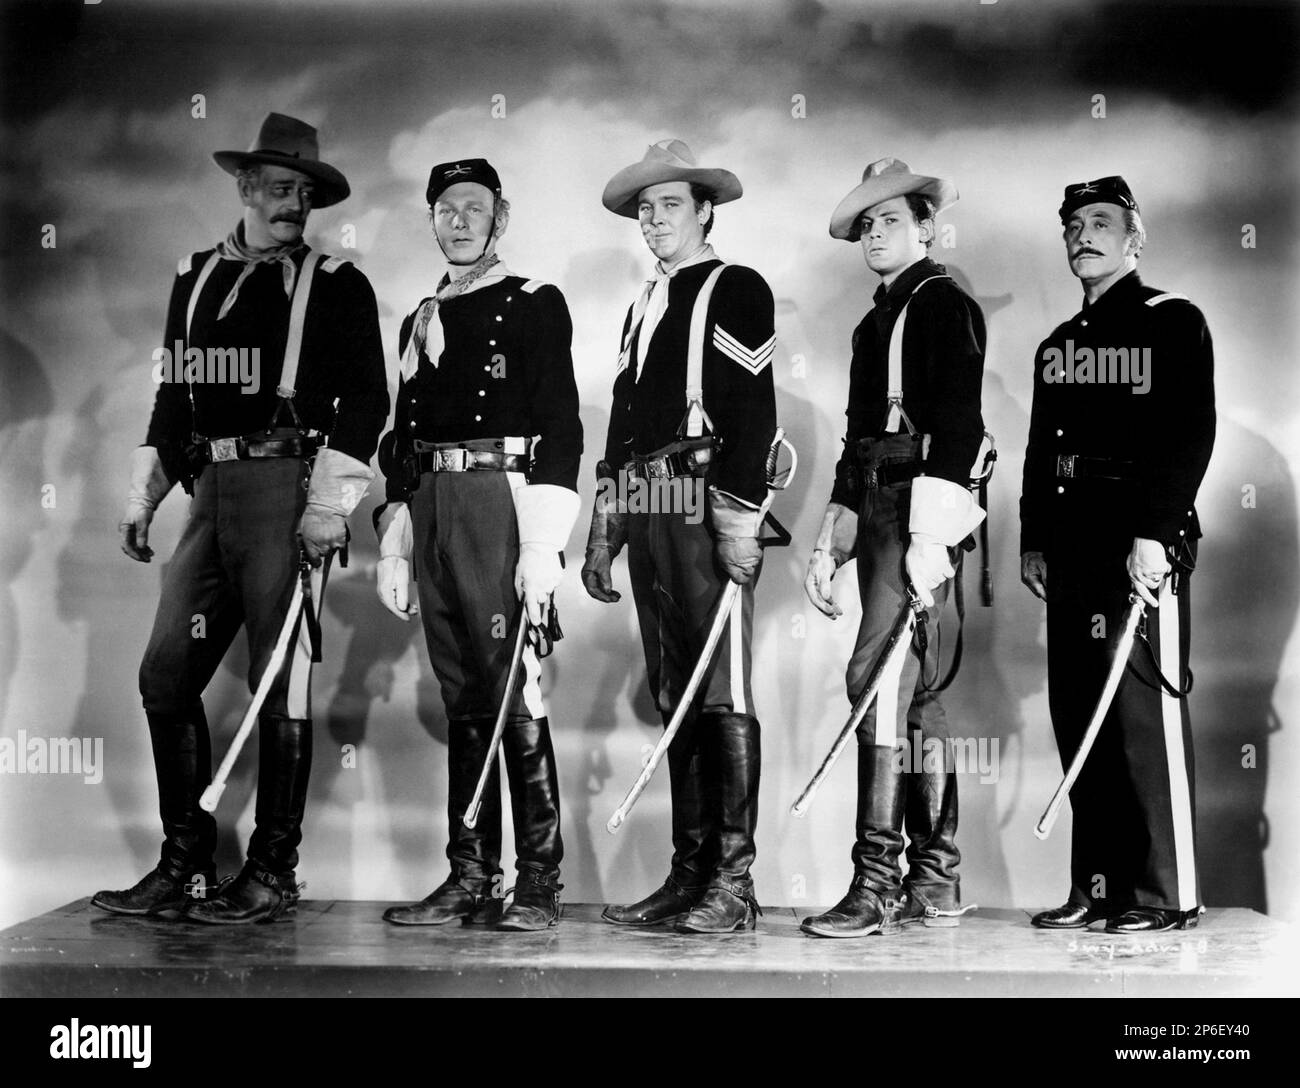 1948 : die gefeierten Filmschauspieler JOHN WAYNE mit GEORGE O'BRIEN (zuerst von rechts) in einem publizistischen Film für den Film TRUG SIE Ein GELBES BAND ( I cavalieri del Nord-Ovest ) von John FORD , Aus einem Roman von James Warner Bellah - KINO - ATTORE CINEMATOGRAFICO - COWBOY - WESTERN - Hut - cappello - FILM - spada - Schwert - Foulard - Bandanna - Bandana - Militäruniform - Uniforme divisa militare - Handschuhe - Guanti - cavalleria - Sitzecken - Stivali ---- Archivio GBB Stockfoto